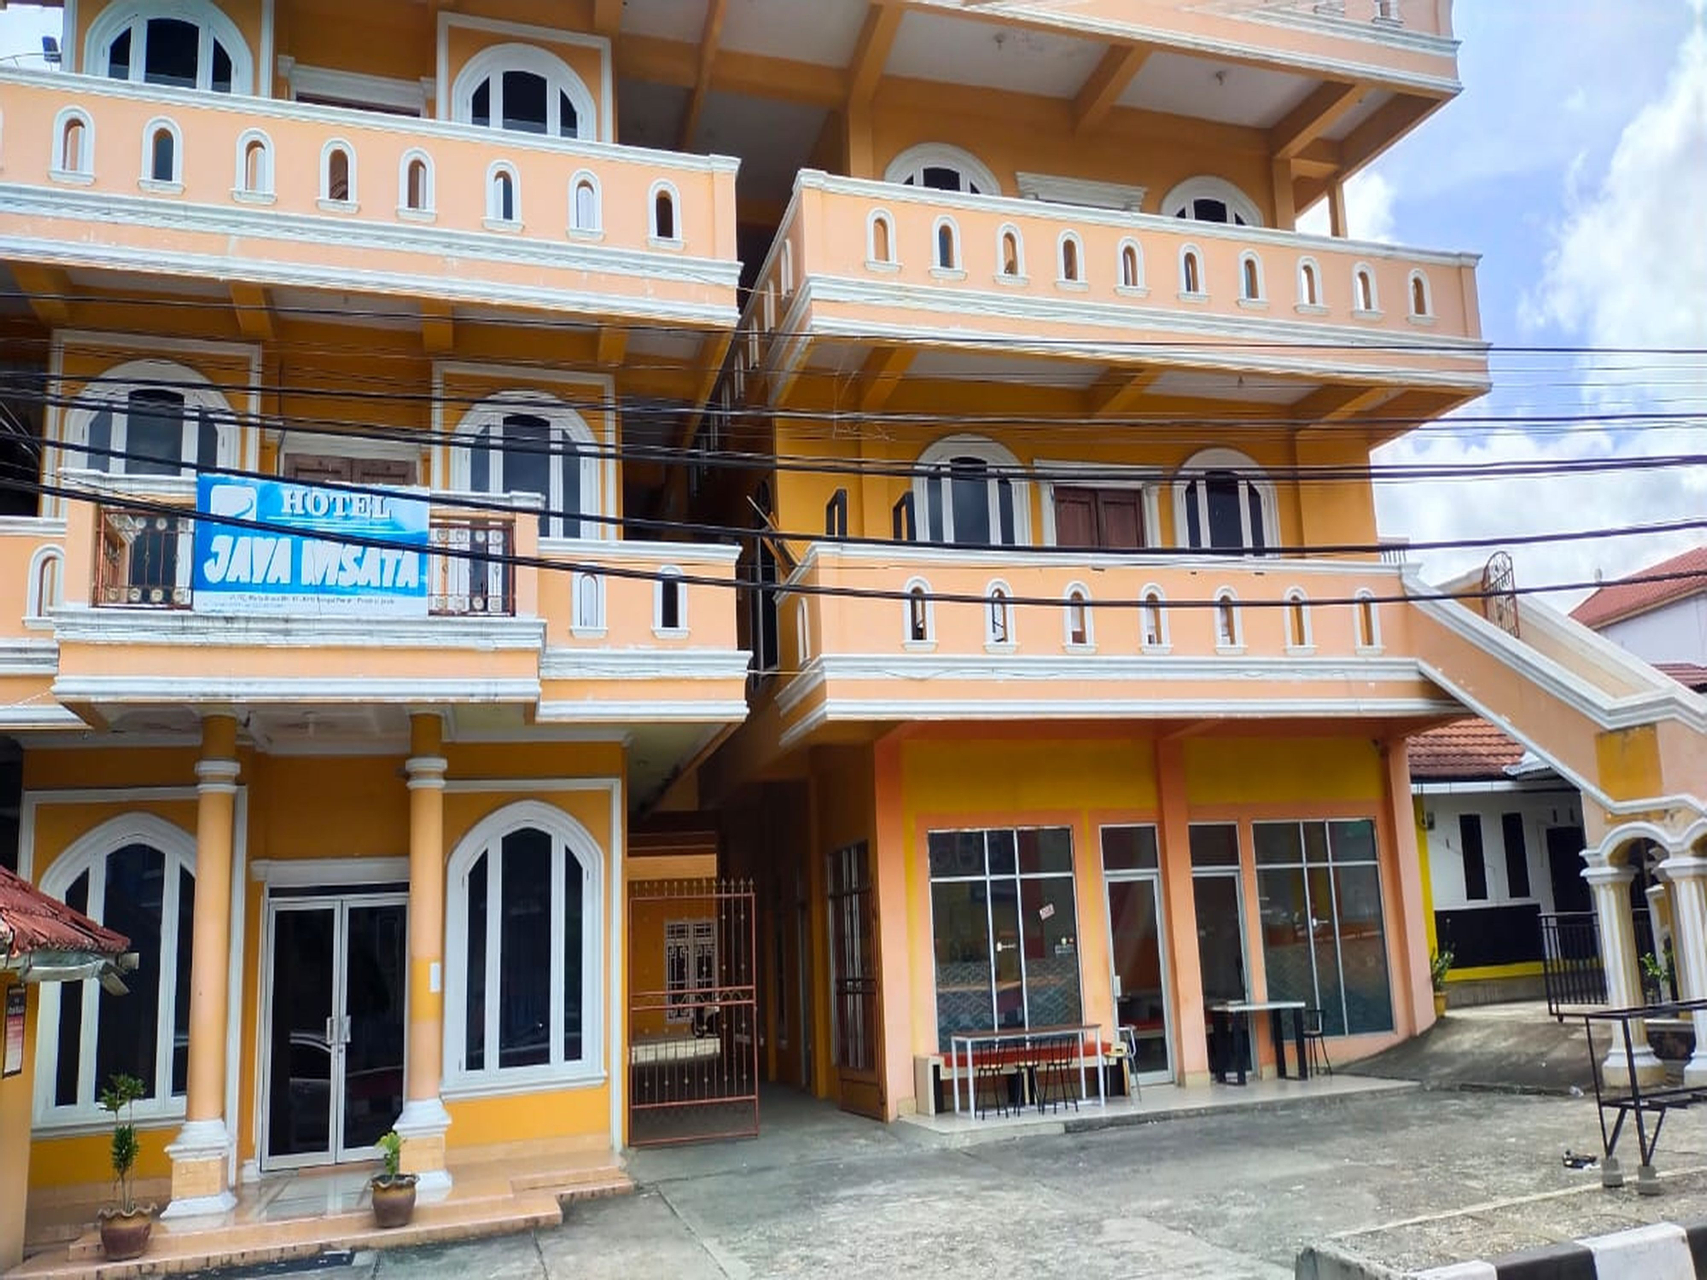 Exterior & Views, Hotel Jaya Wisata 1, Kerinci